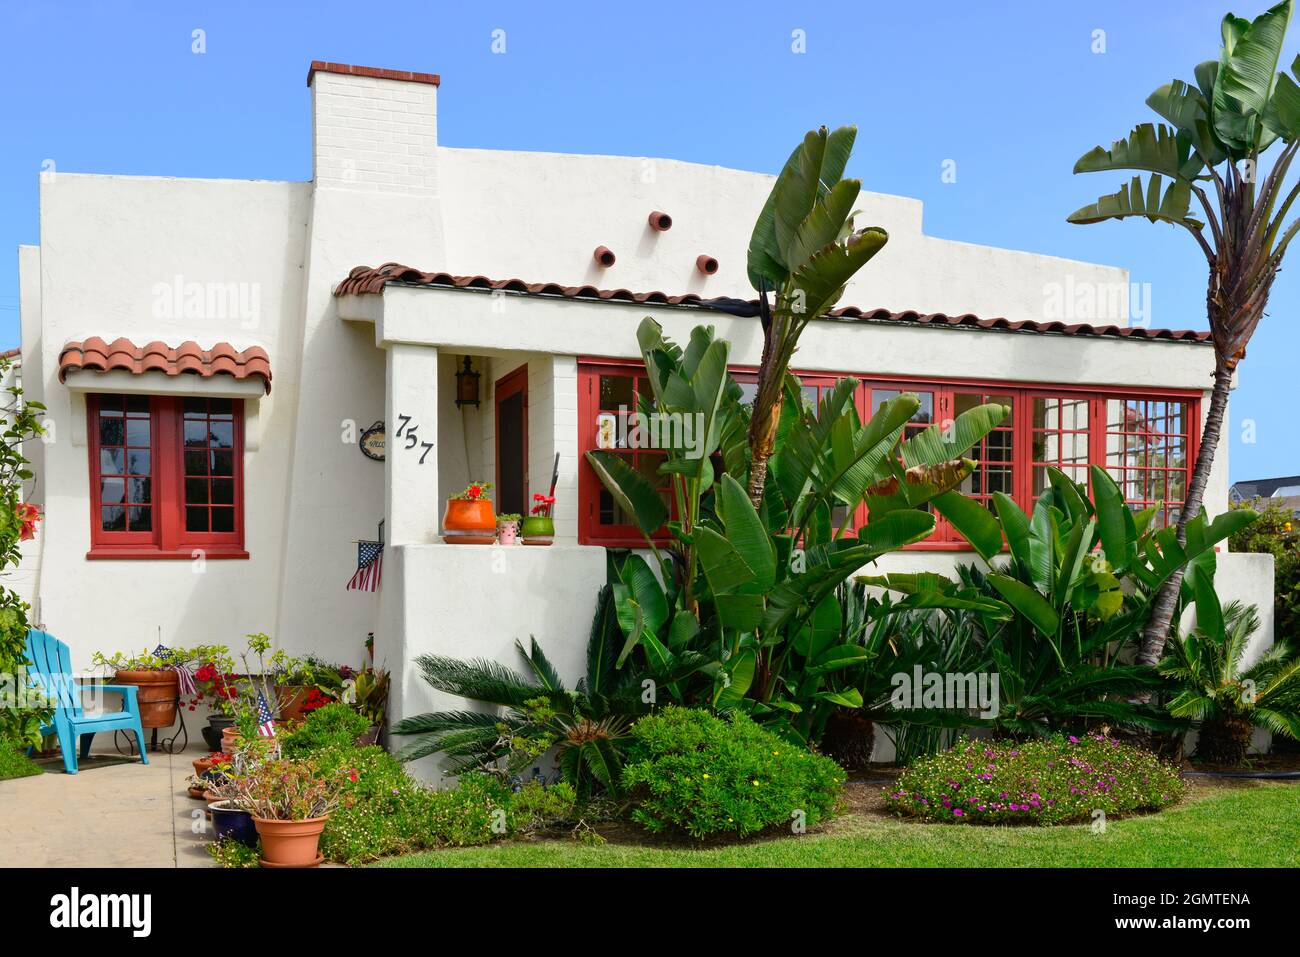 Una casa in stile bungalow in stile biancastro californiano d'epoca con finiture rosse e splendida vegetazione costiera sull'isola di Coronado, San Diego, California Foto Stock